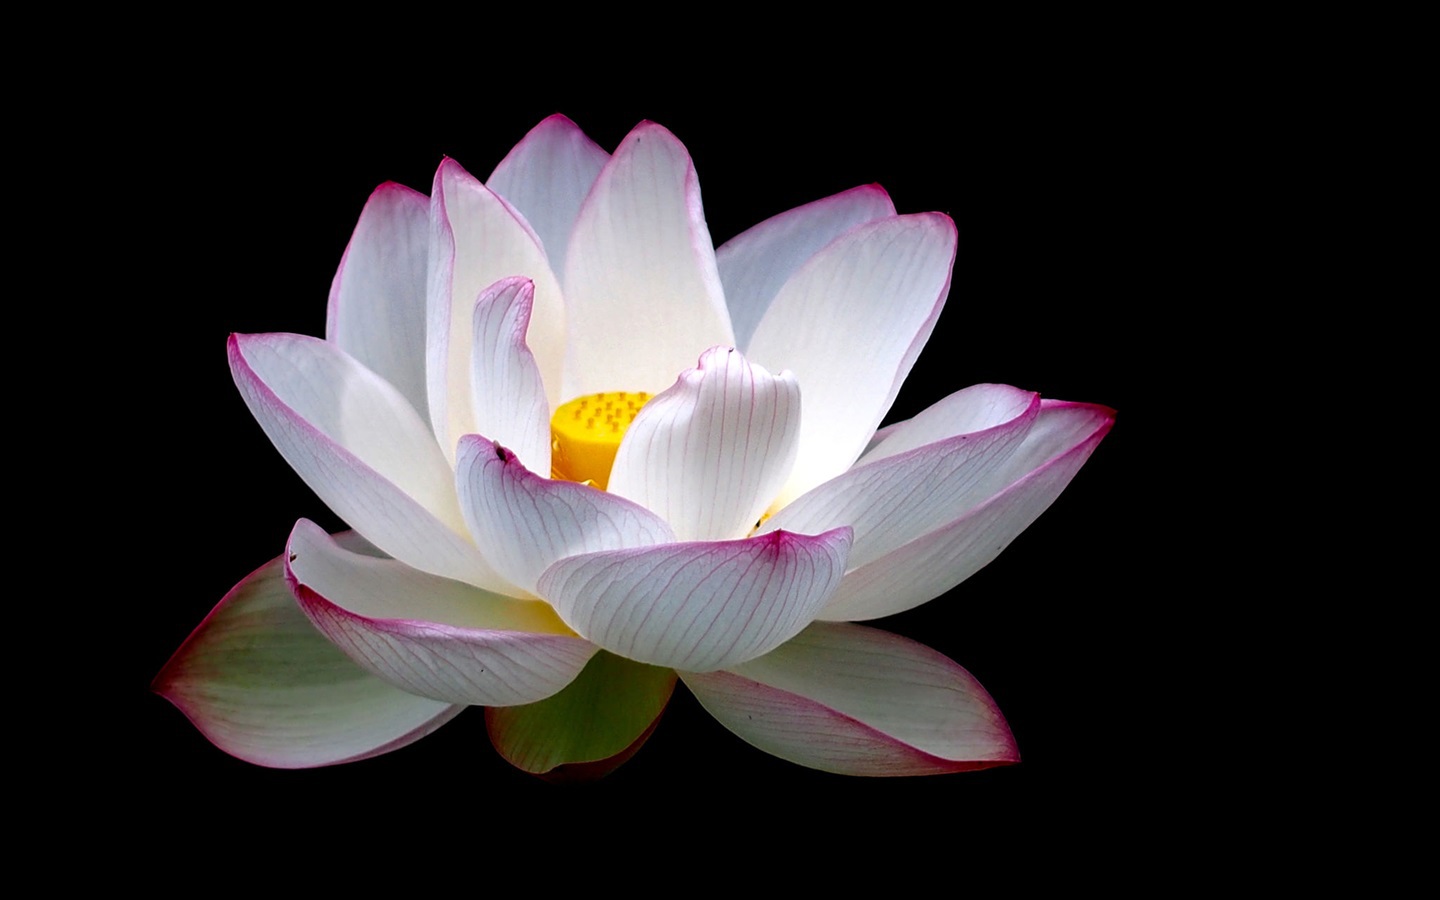 White Lotus Images